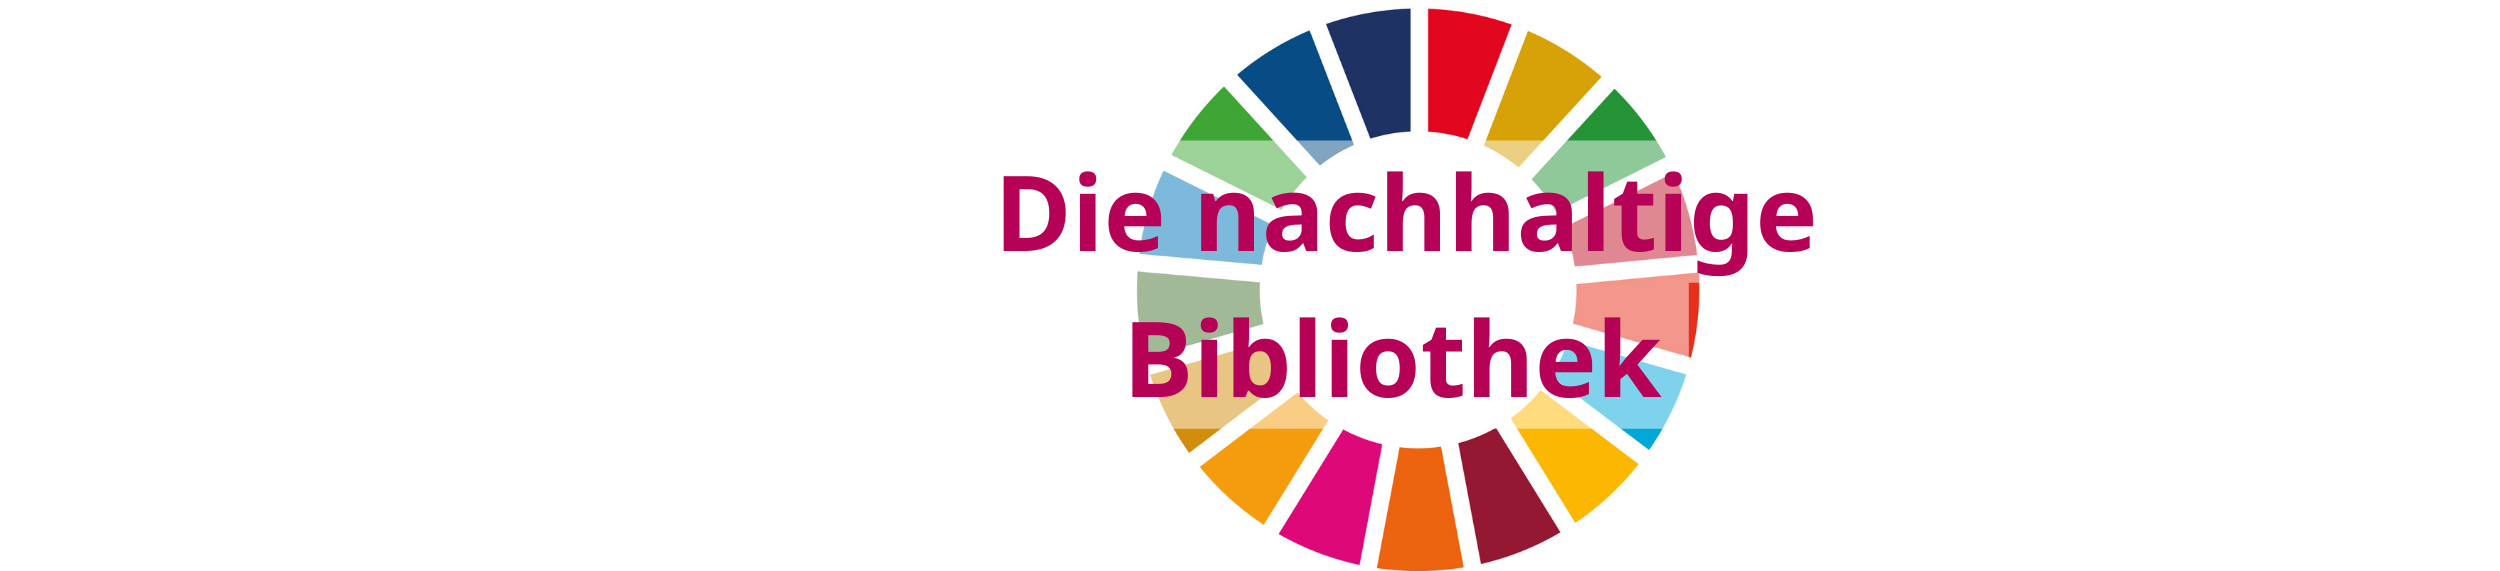 Bühneneintrag mit Logo der Agenda 2030 und "Die nachhaltige Bibliothek"